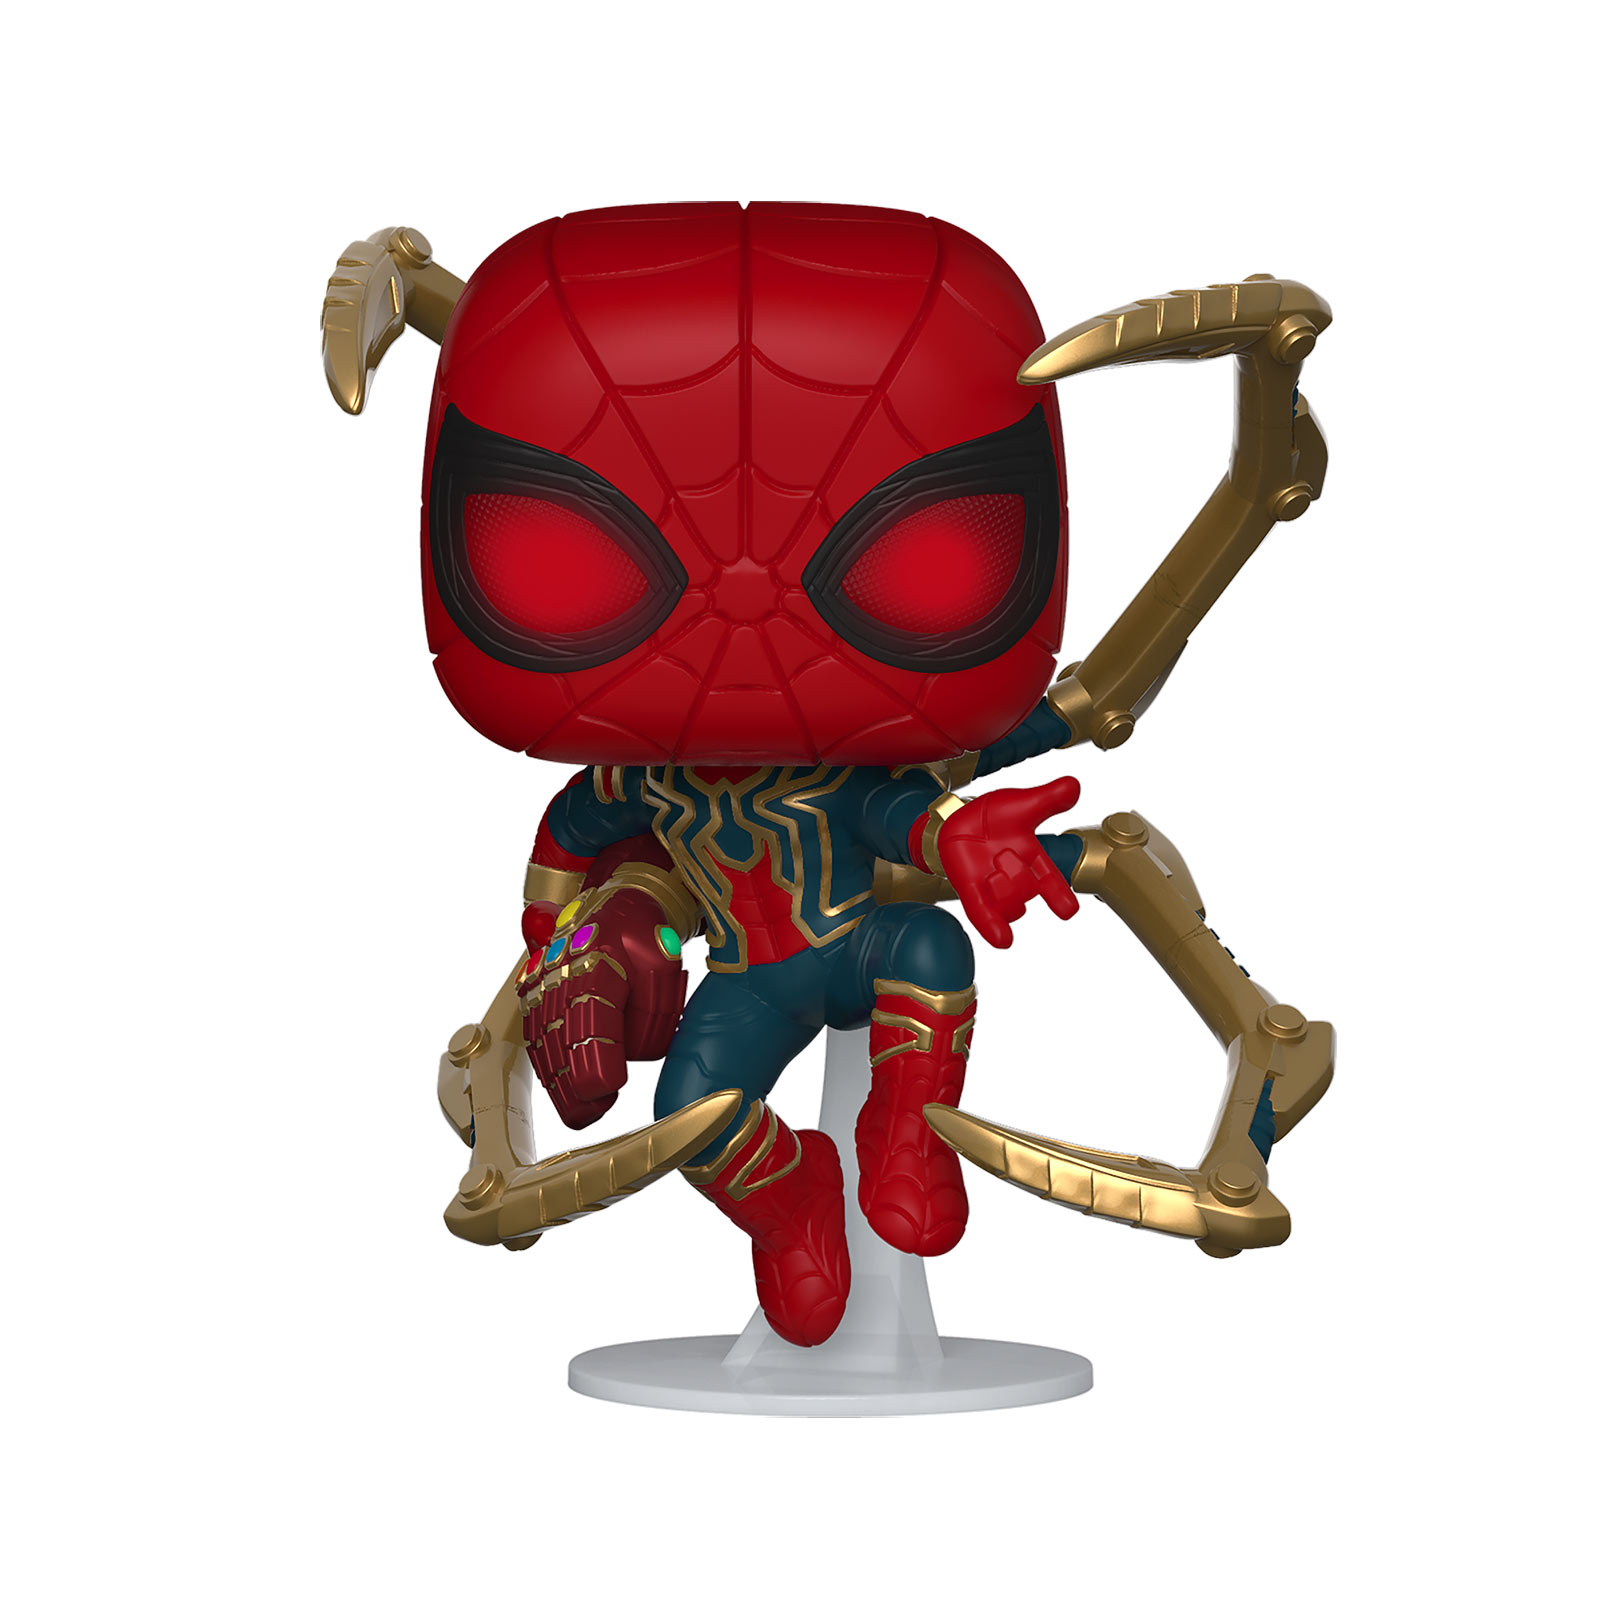 Avengers - Iron Spider Endgame Funko Pop Bobblehead Figure